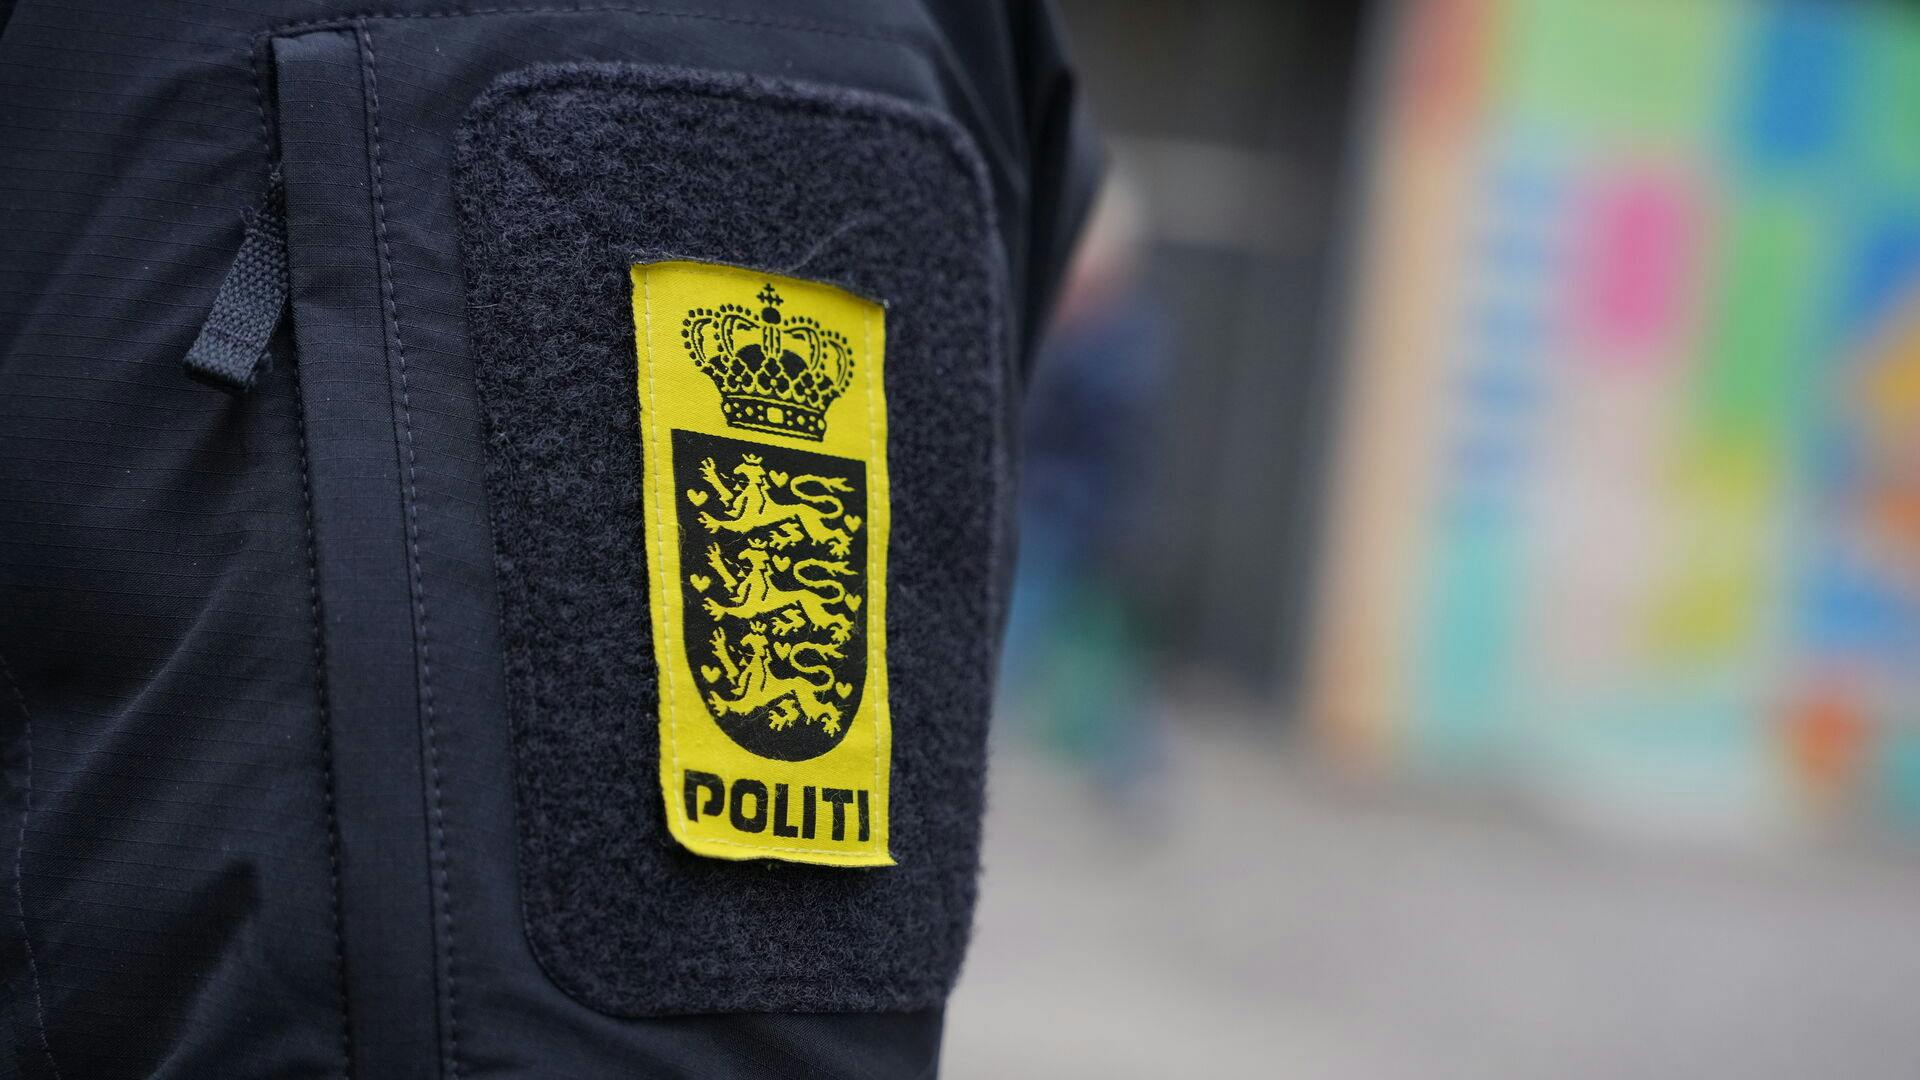 Politi i gaderne i København, torsdag den 14. december 2023. Her er det foran Synagogen i Krystalgade.